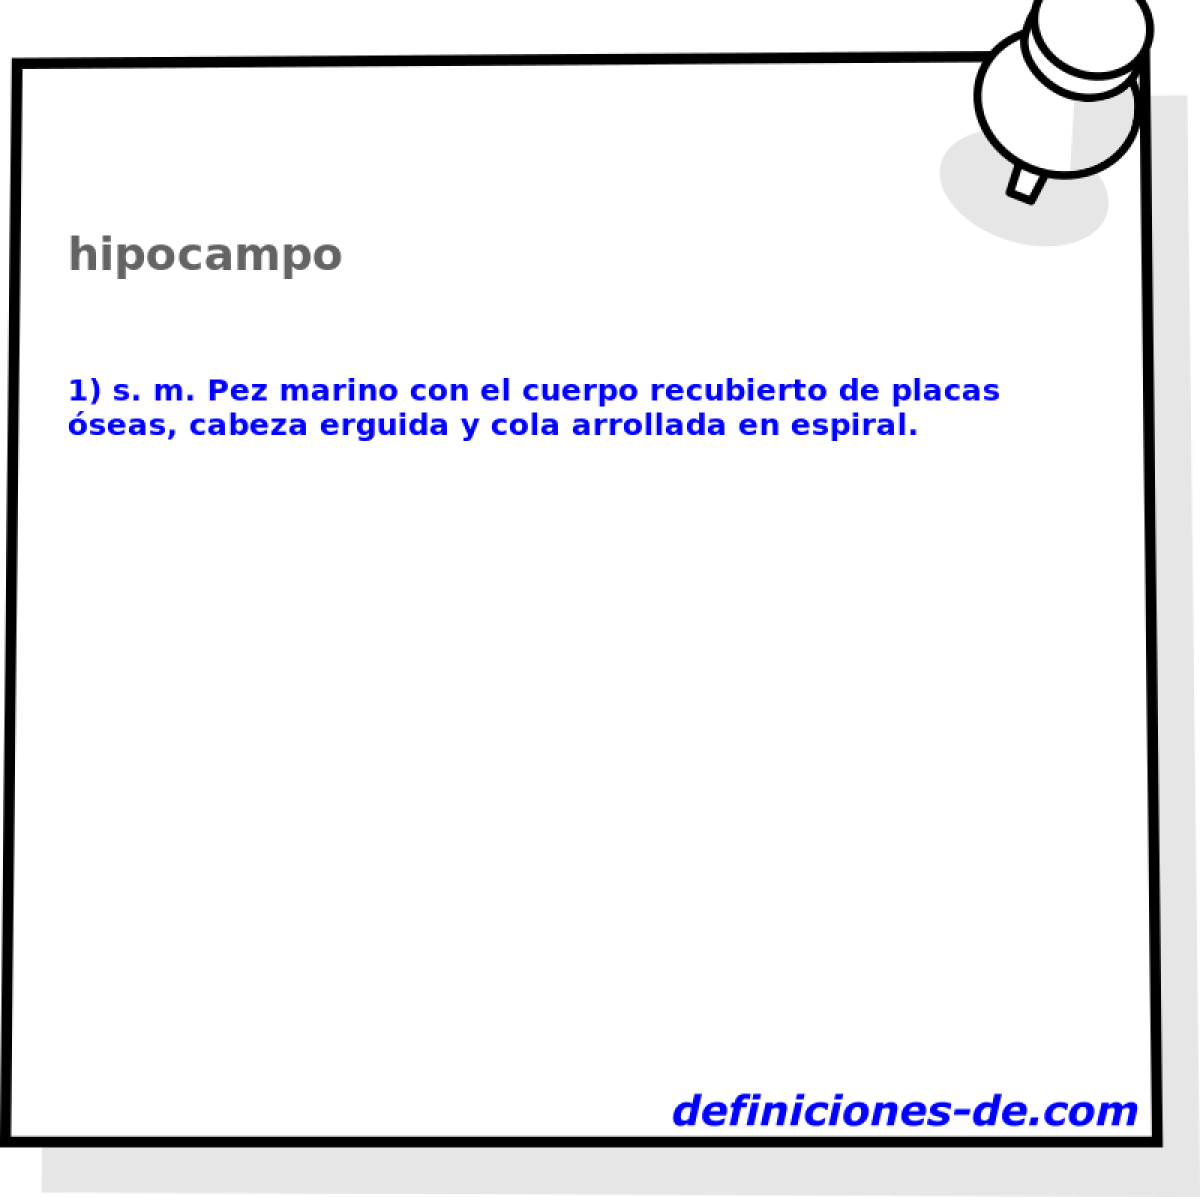 hipocampo 